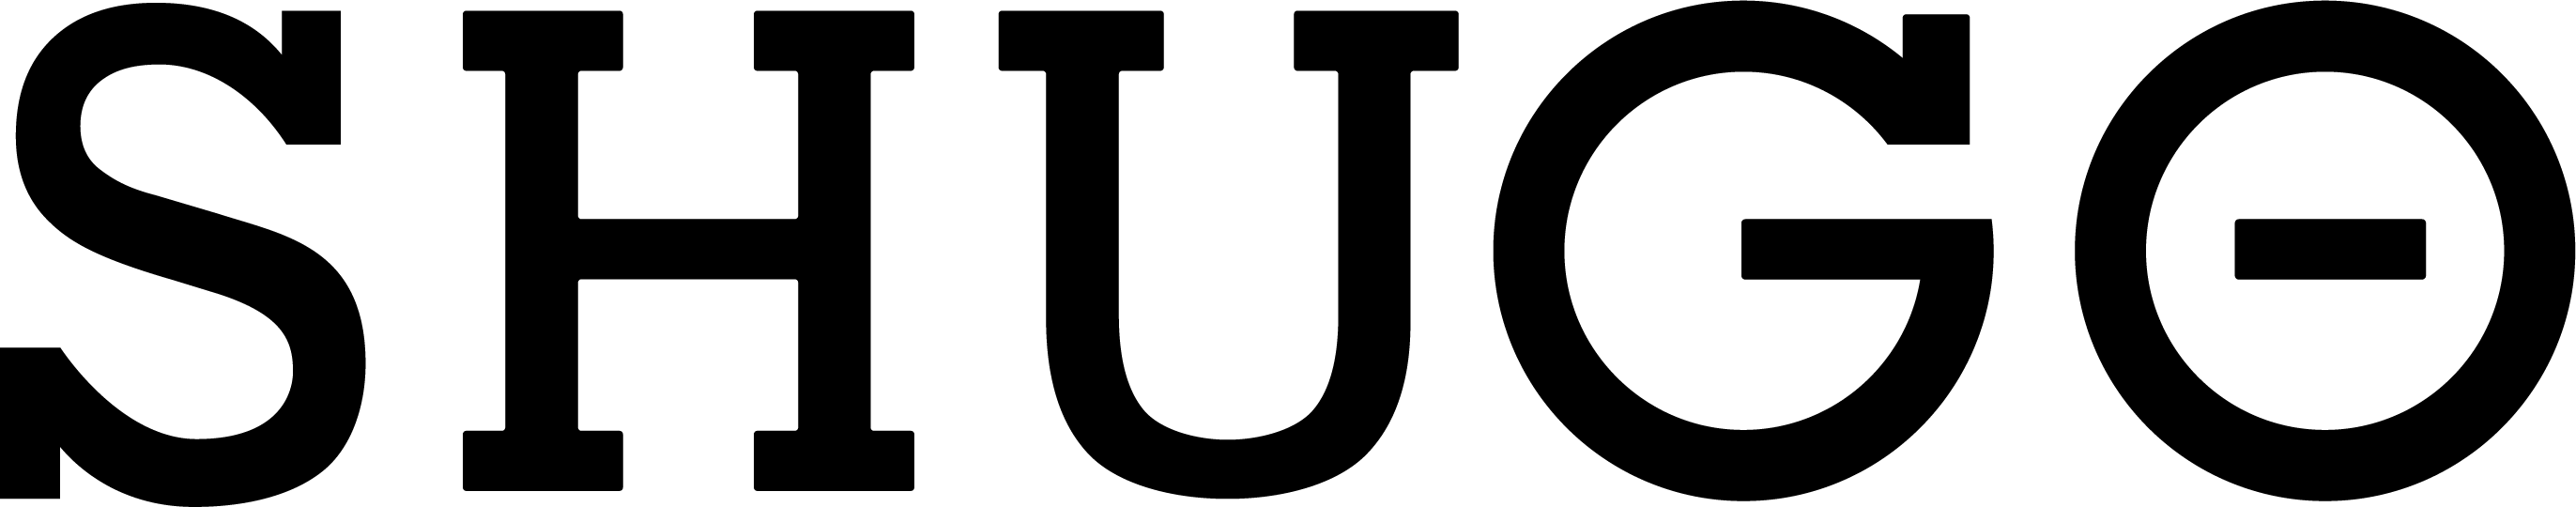 SHUGO logo